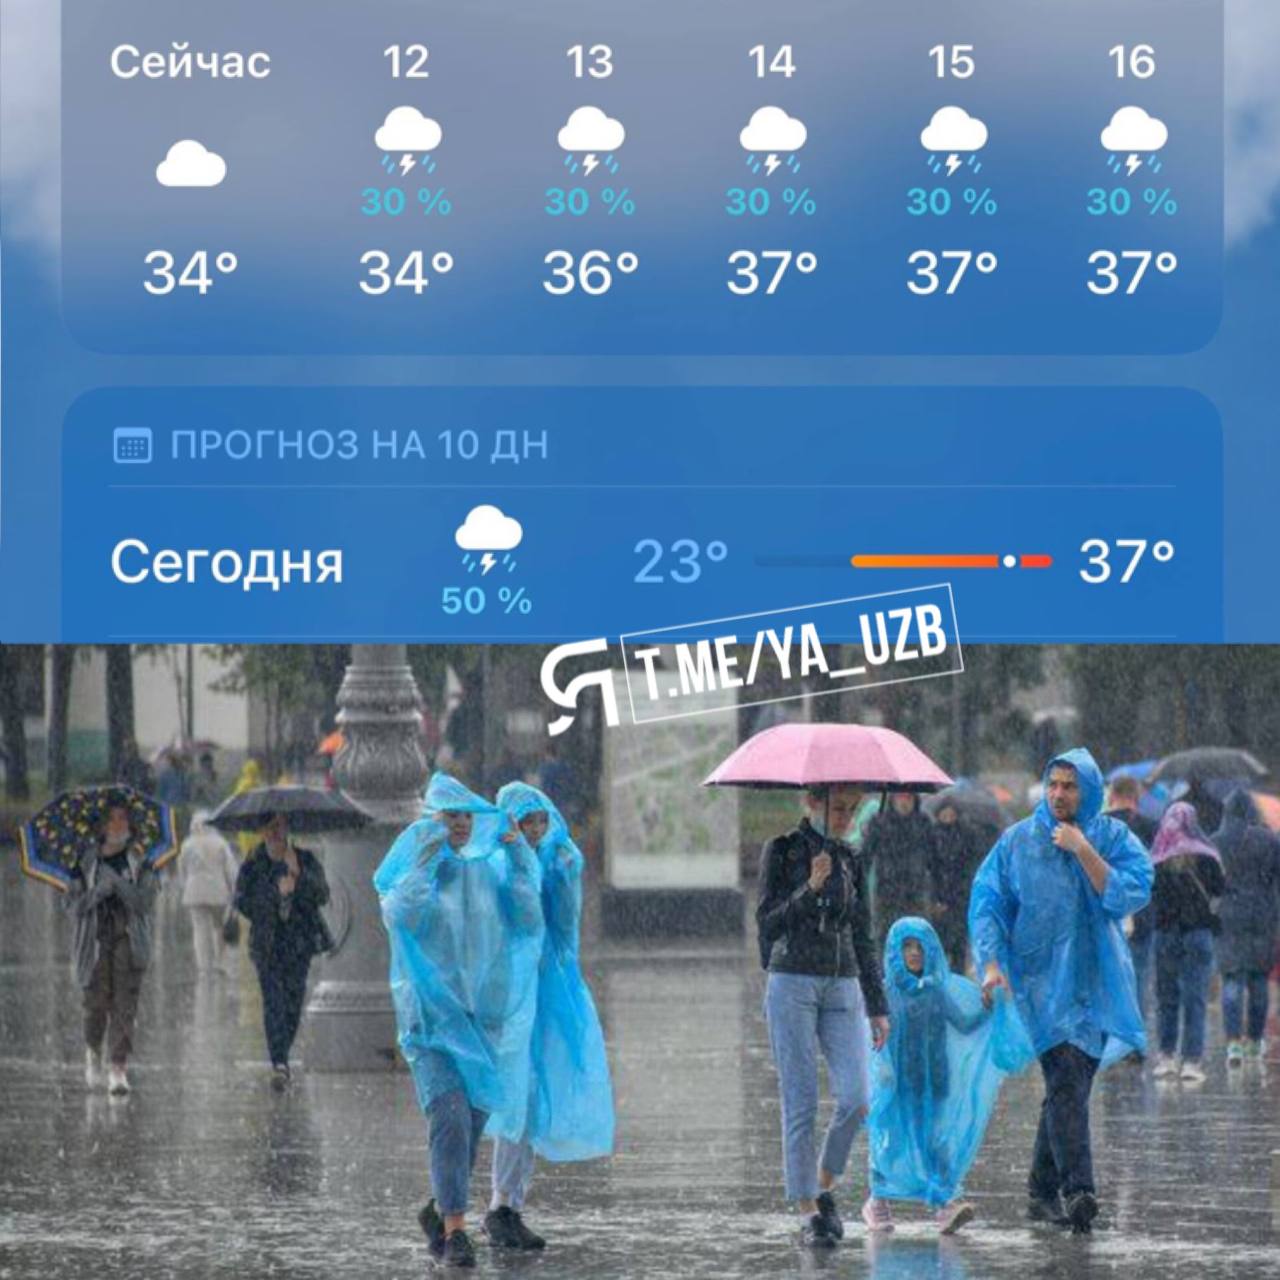 Жара в Ташкенте 60 градусов. Дождик будет. Возможно будет дождь. Температура в Ташкенте сегодня.